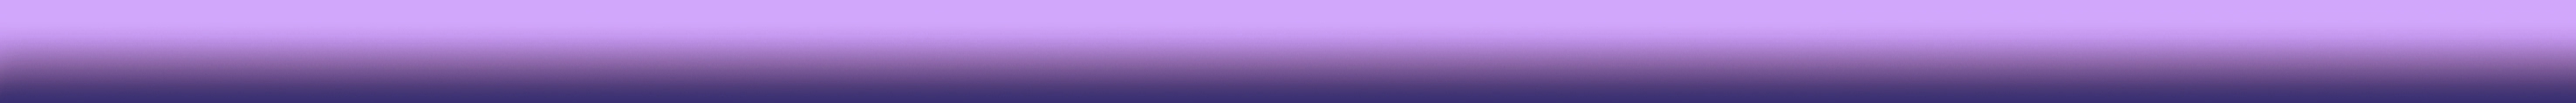 Бордюр Buhara Стеклянный лиловый 50x2